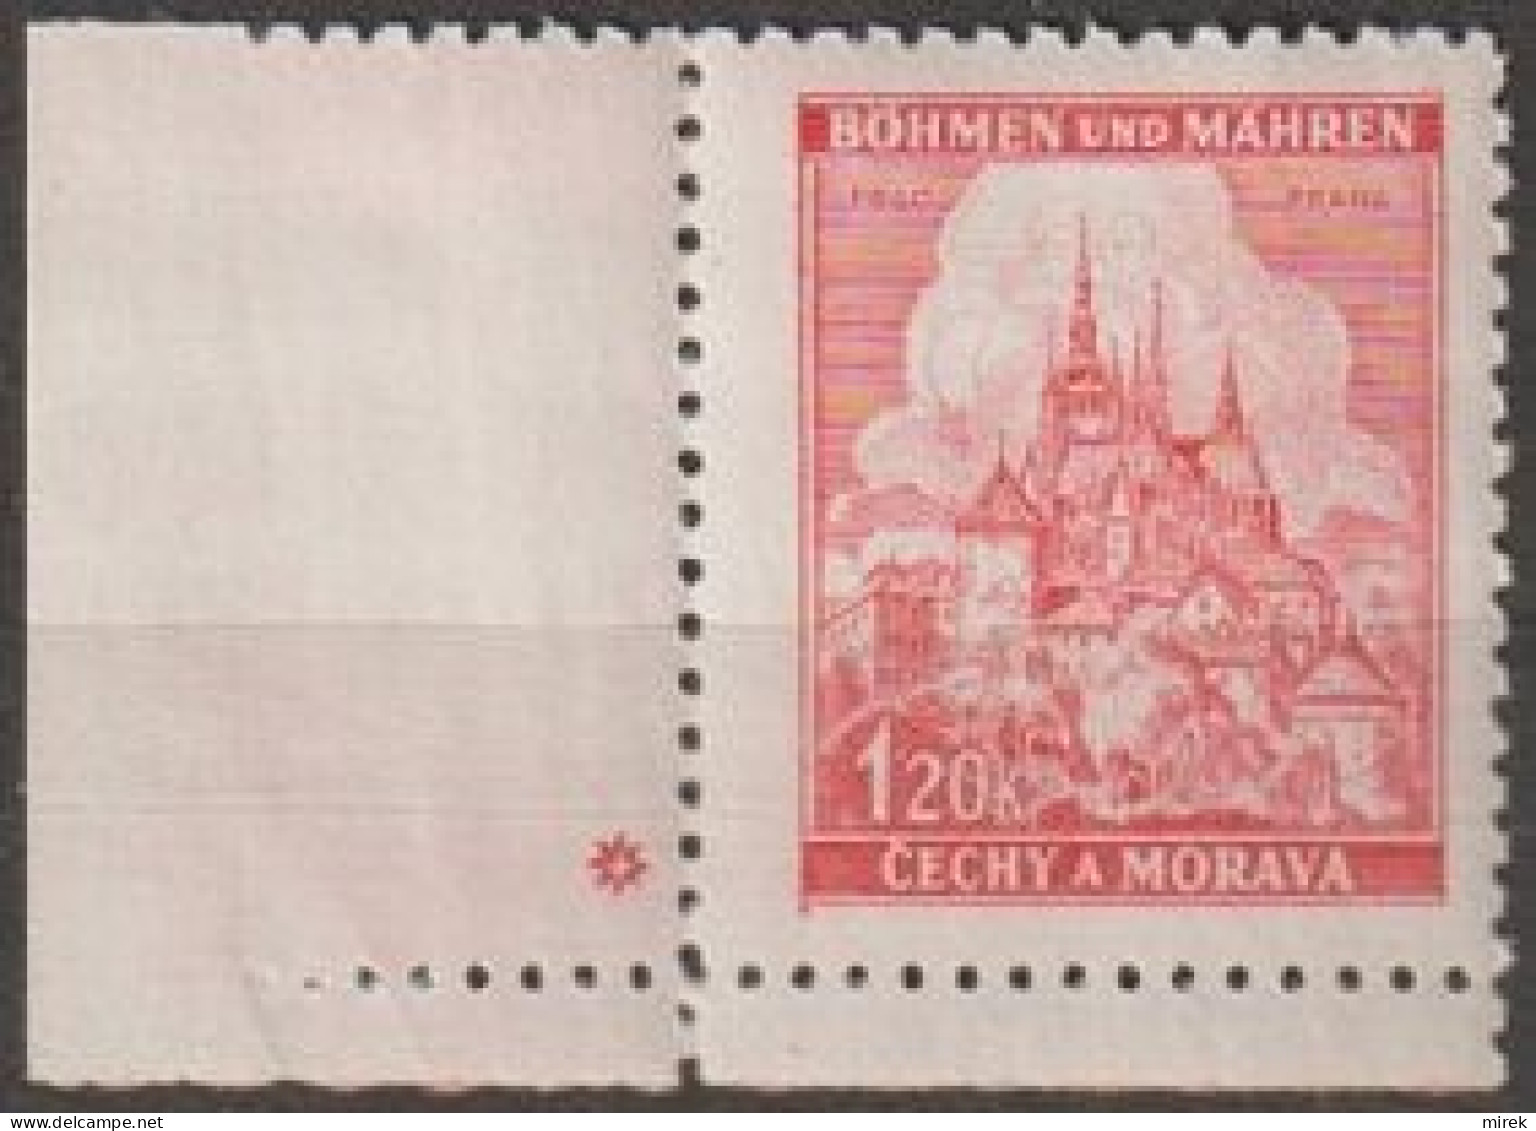 067/ Pof. 57, Corner Stamp, Plate Mark * - Ungebraucht